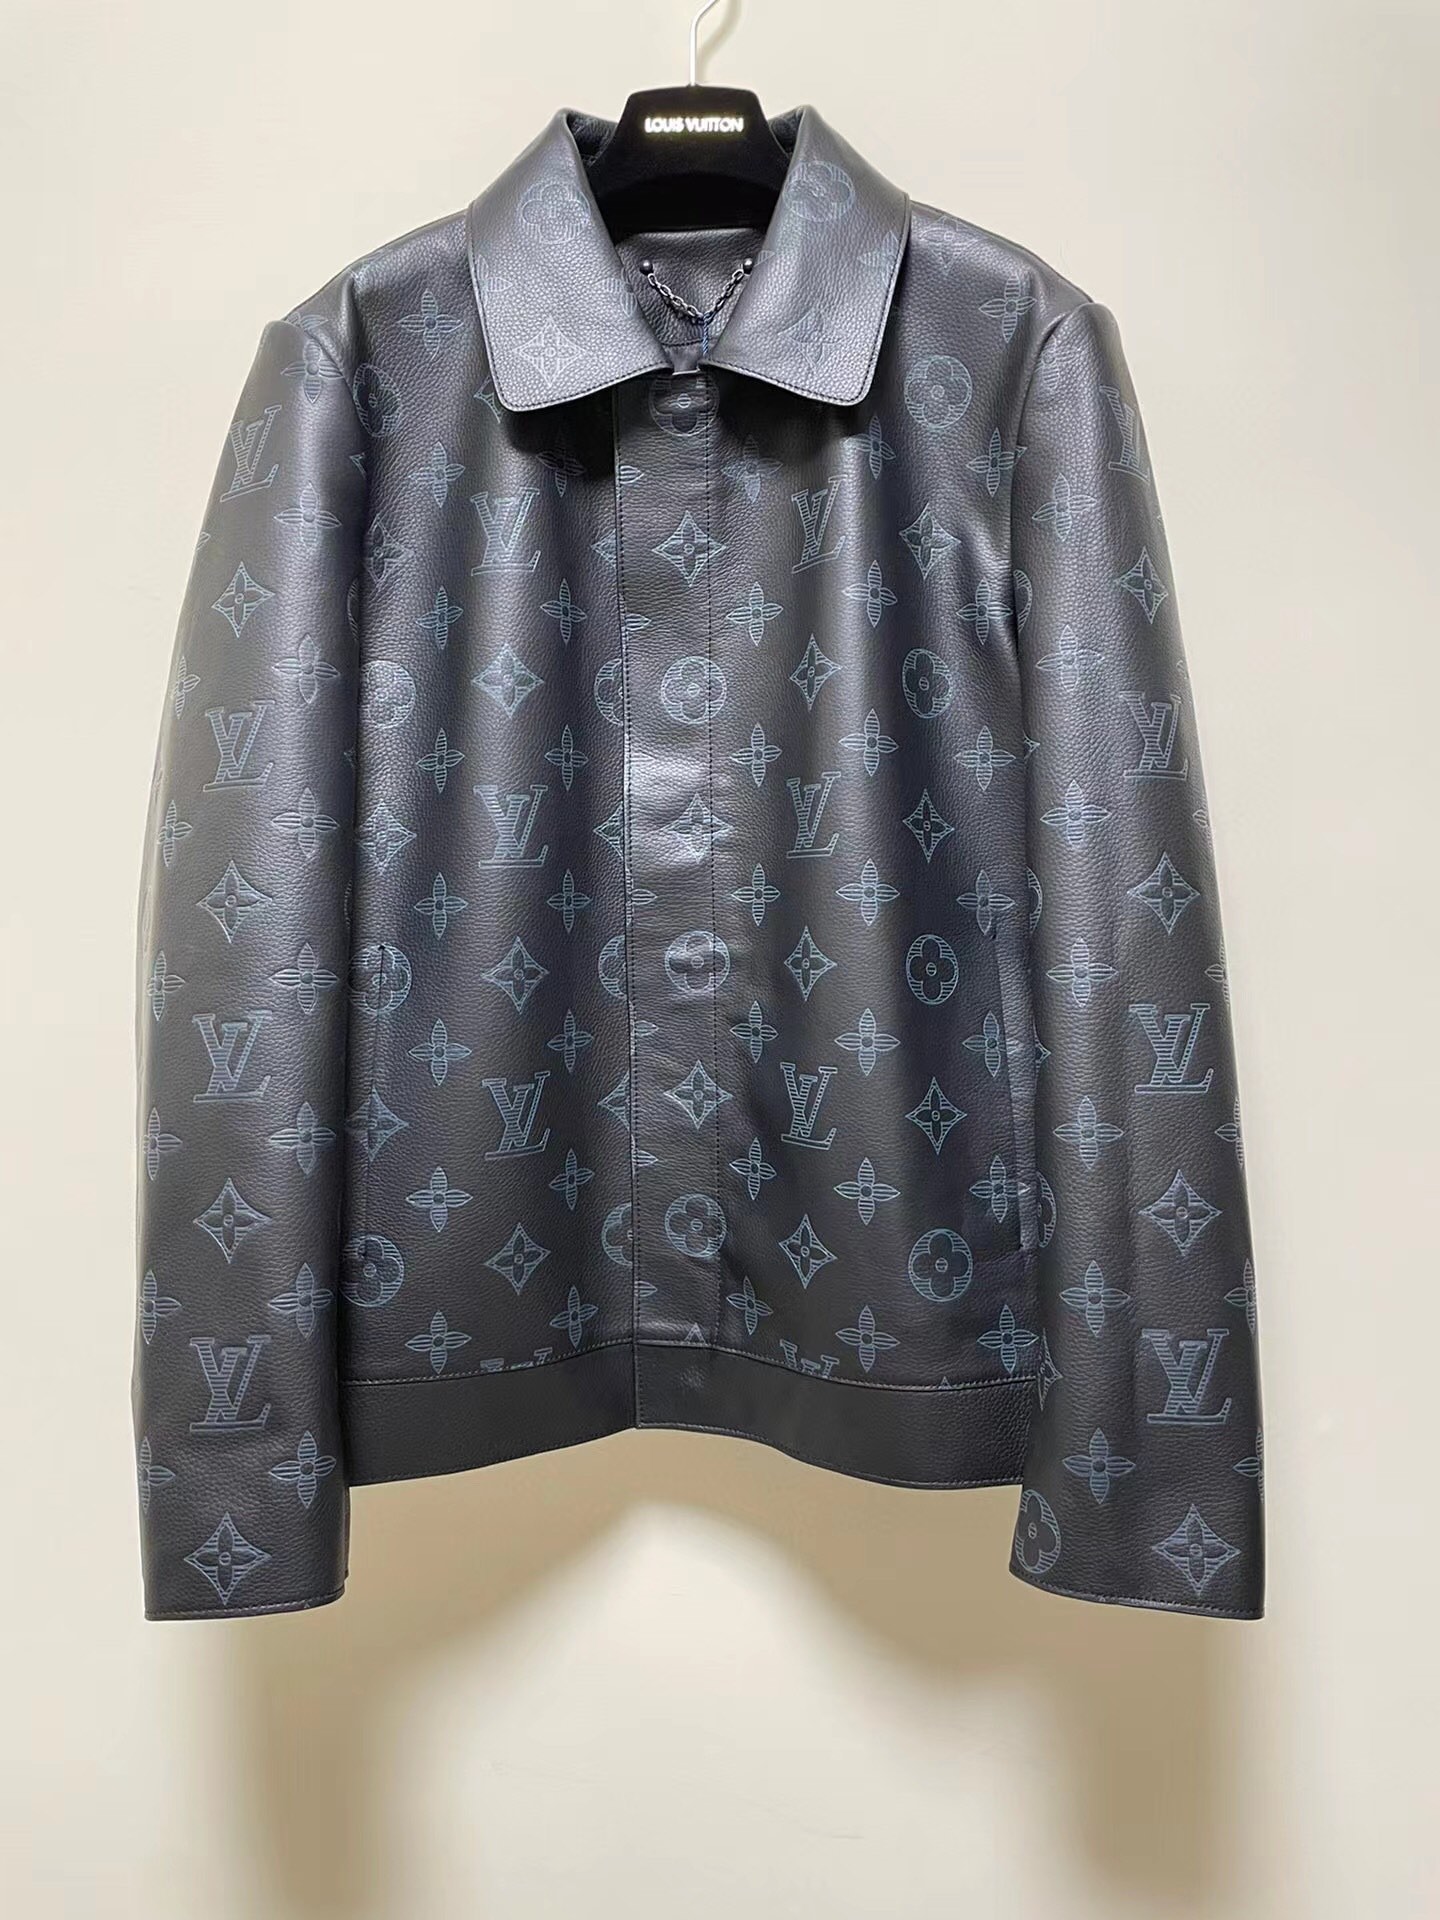 本款牛皮夹克采用压印和印花工艺演绎全幅 Shadow Monogram 图案皮衣